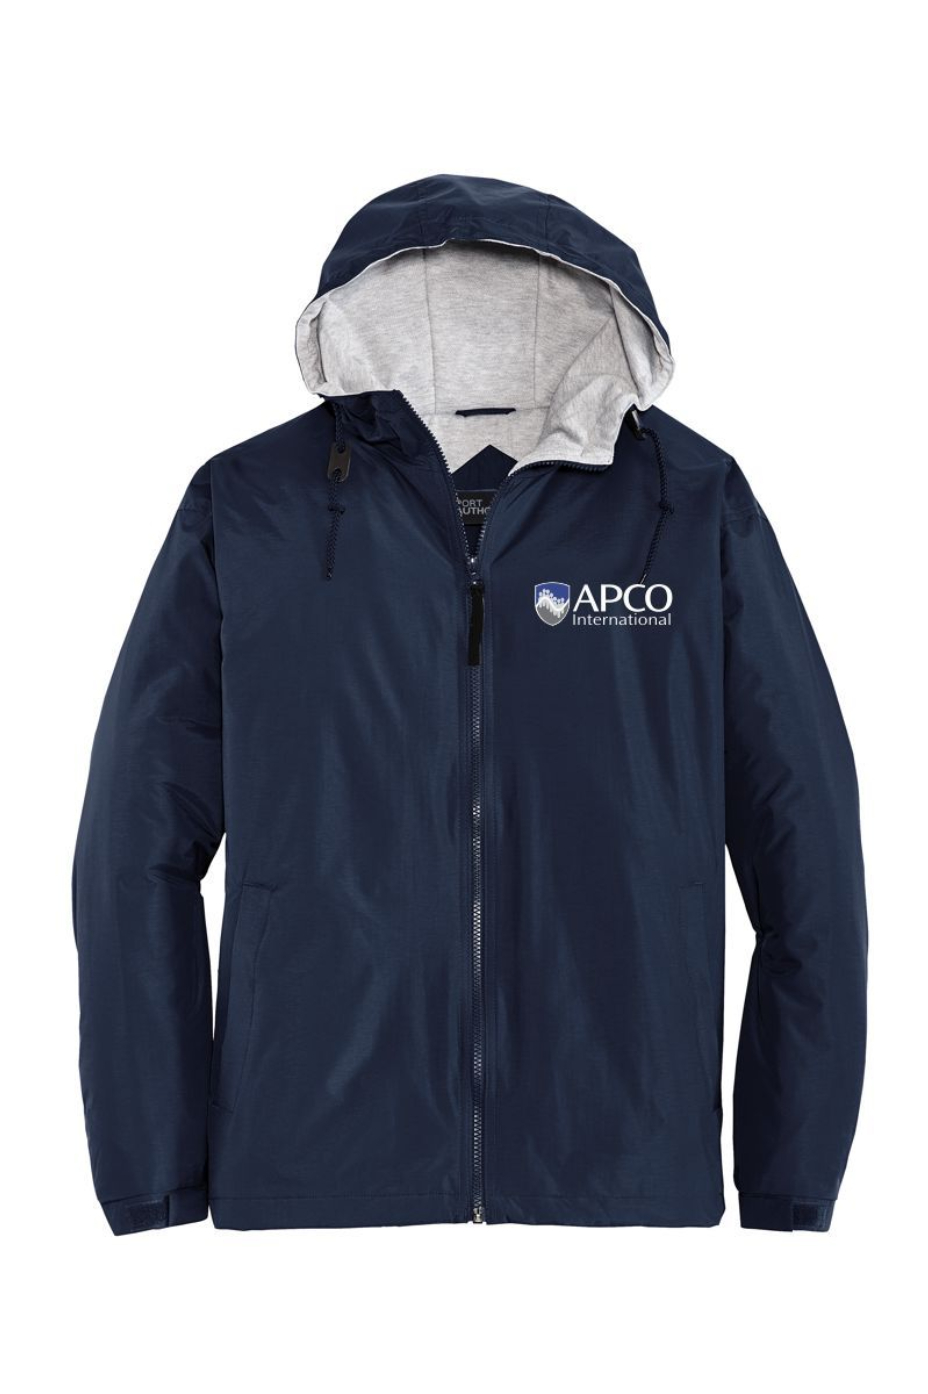 APCO - Team Jacket